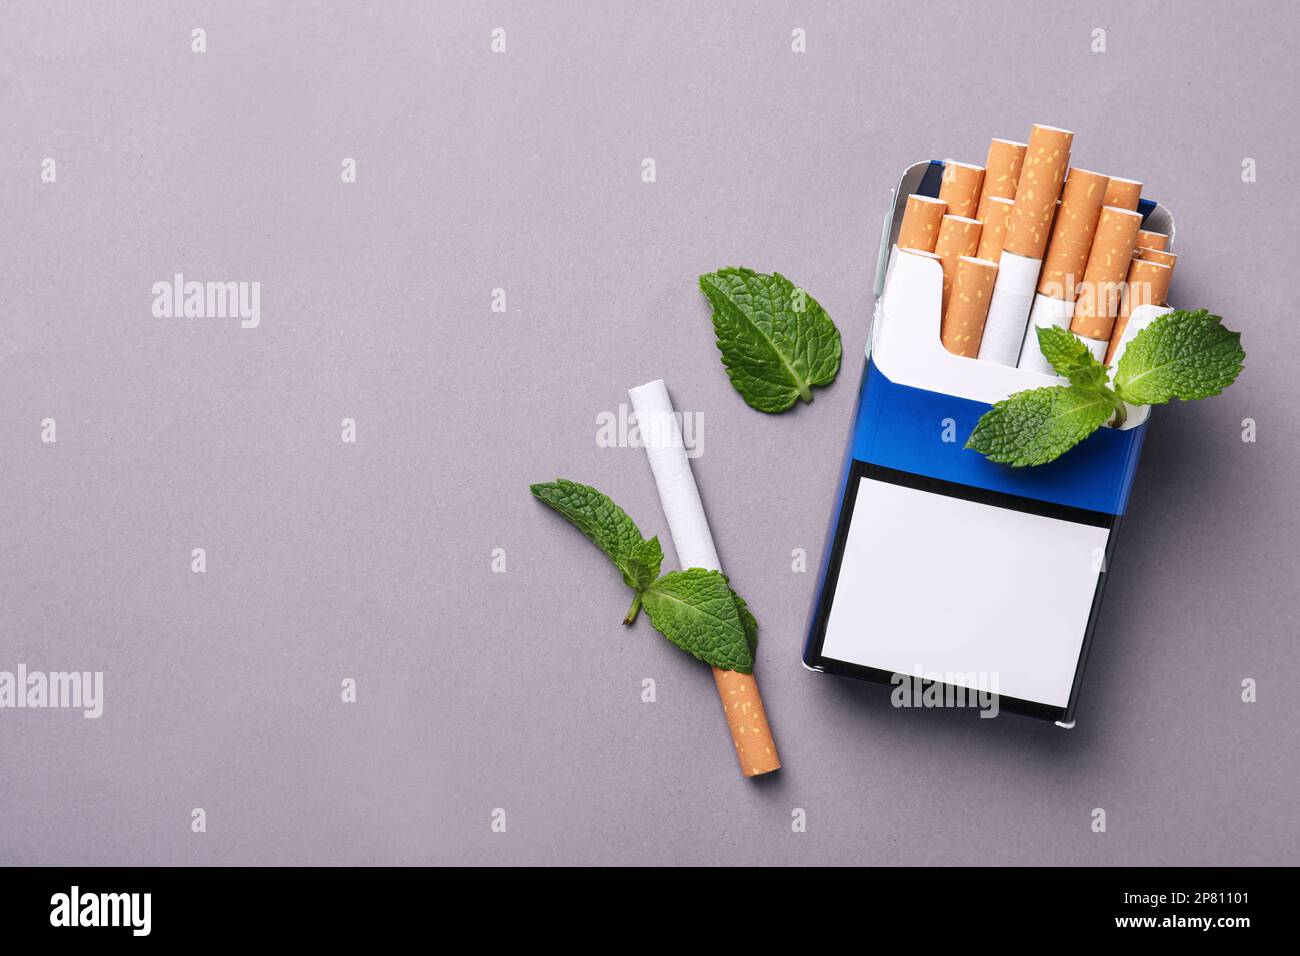 Paquet de cigarettes de menthol et feuilles de menthe sur fond gris, plat. Espace pour le texte Banque D'Images